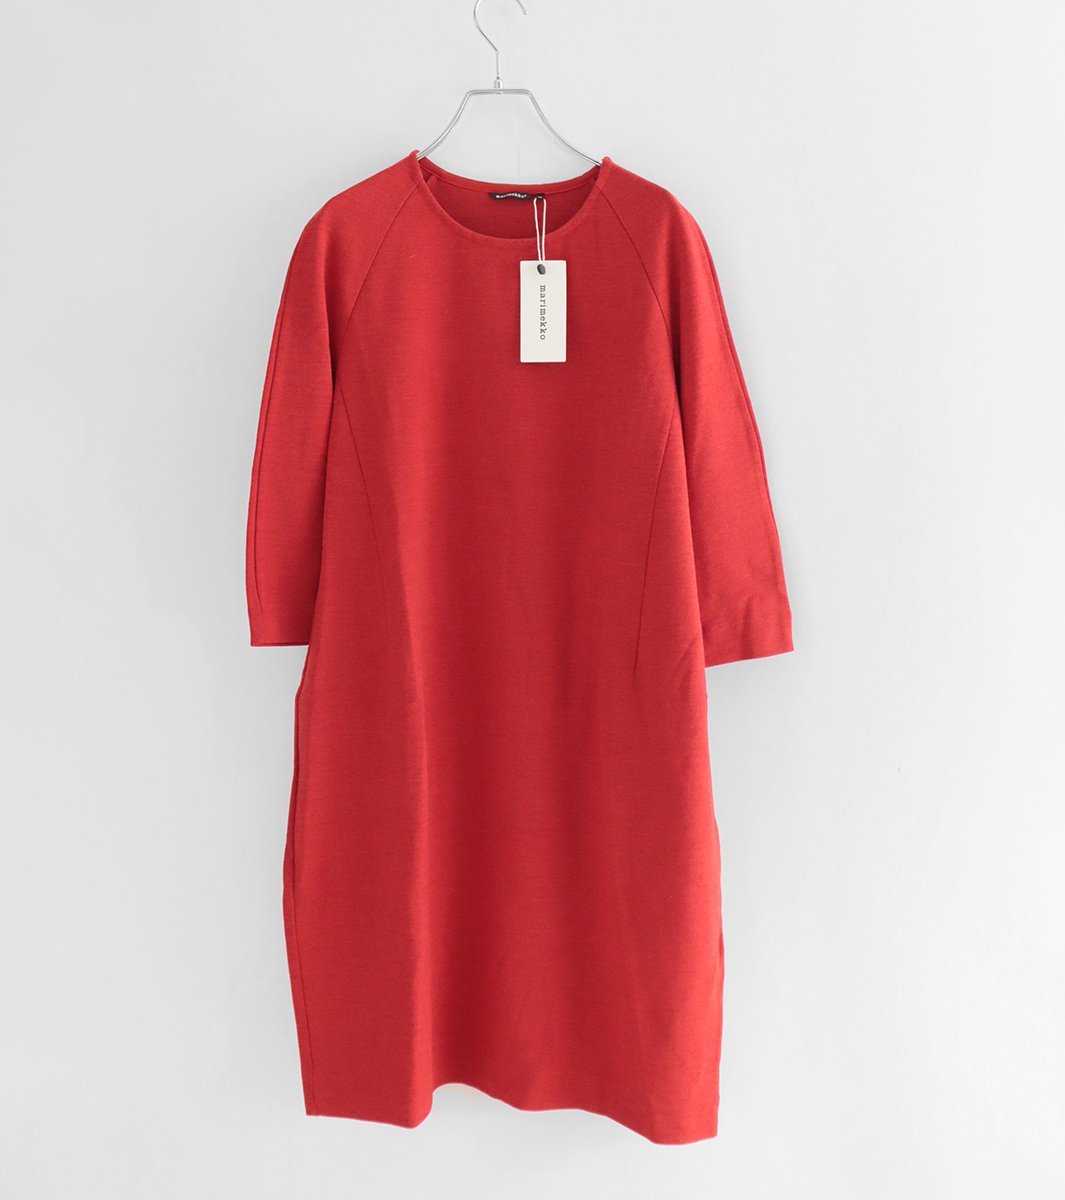 未使用* marimekko ◆ ウールジャージ ニット ワンピース 赤 レッド XS ドレス 下げ札付き マリメッコ ◆MK13